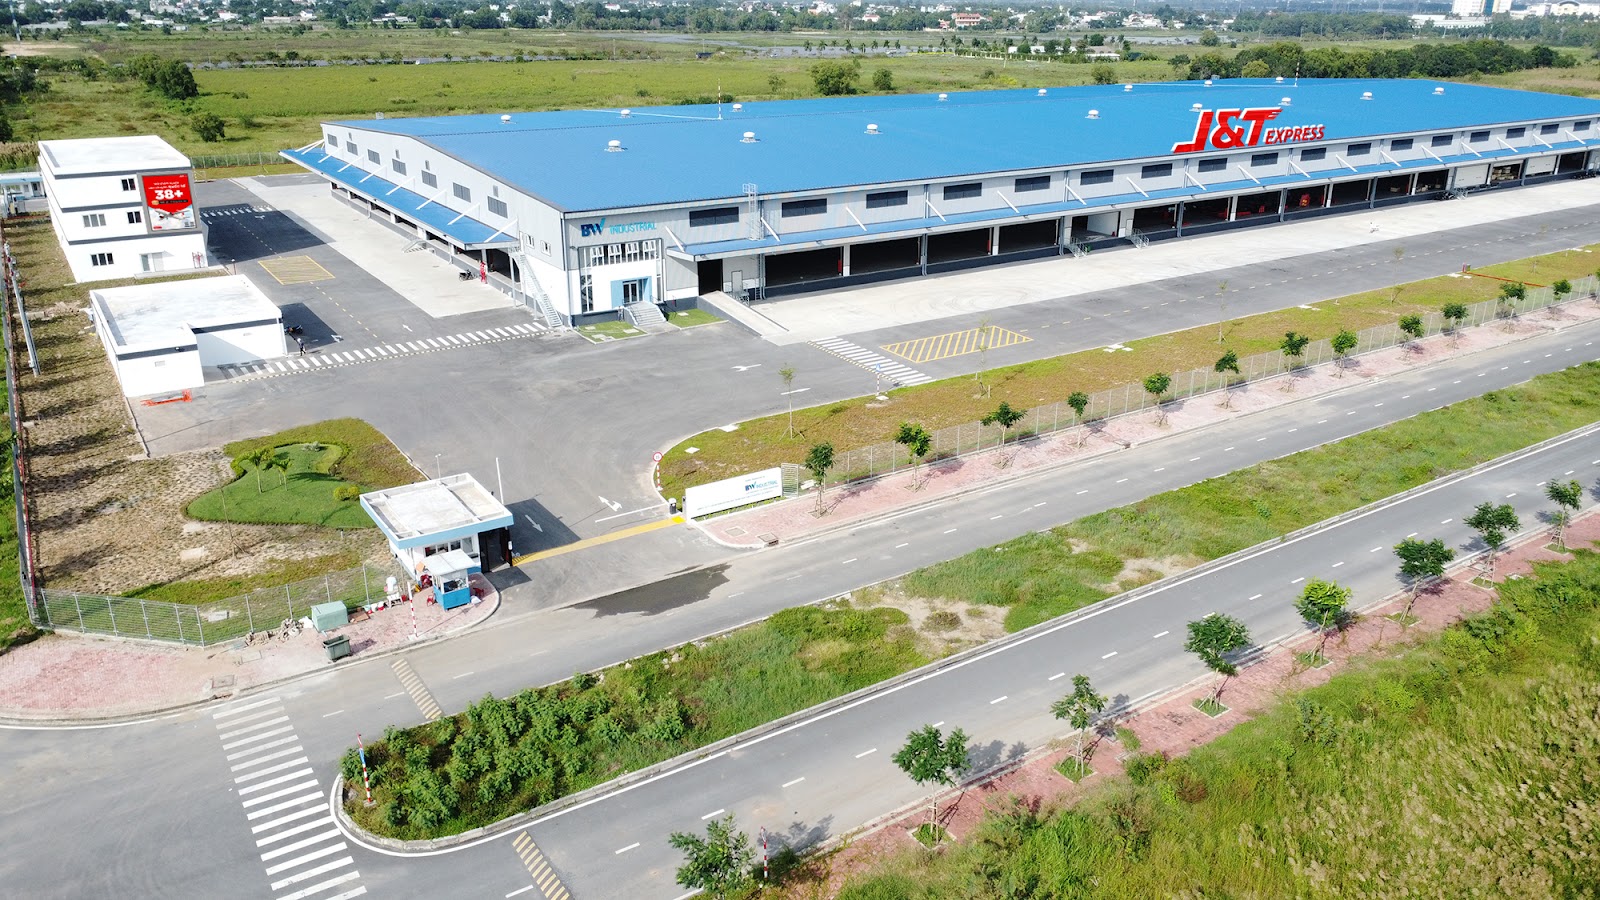  Trung tâm trung chuyển hàng hóa lớn nhất và hiện đại nhất của J&T Express tại Việt Nam đang được xây dựng